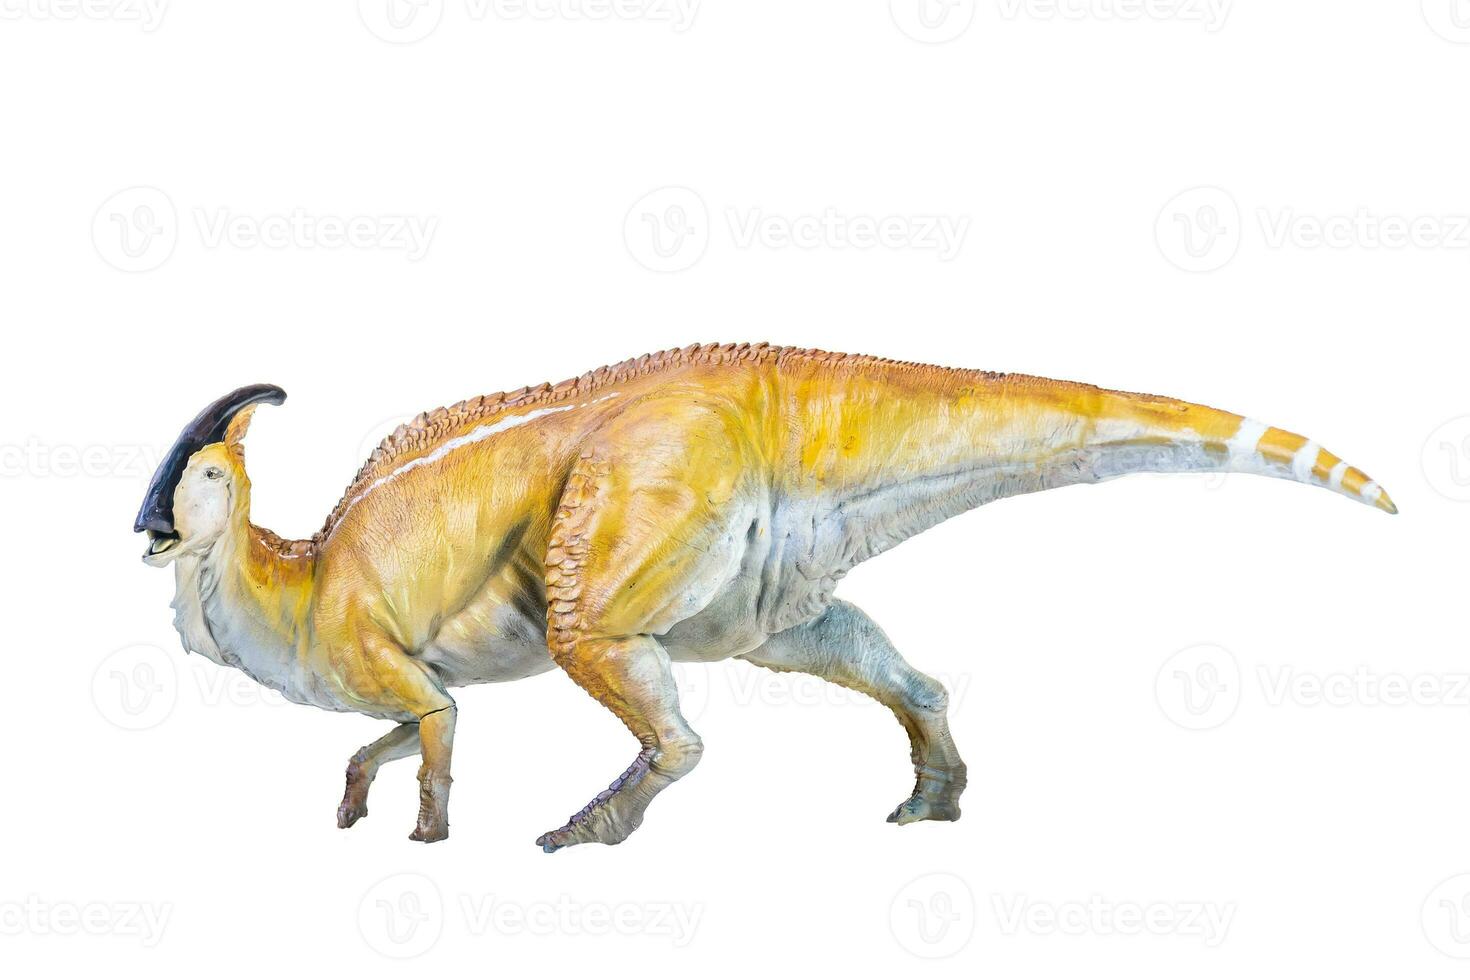 parasaurolophus dinosaurie isolerat bakgrund foto